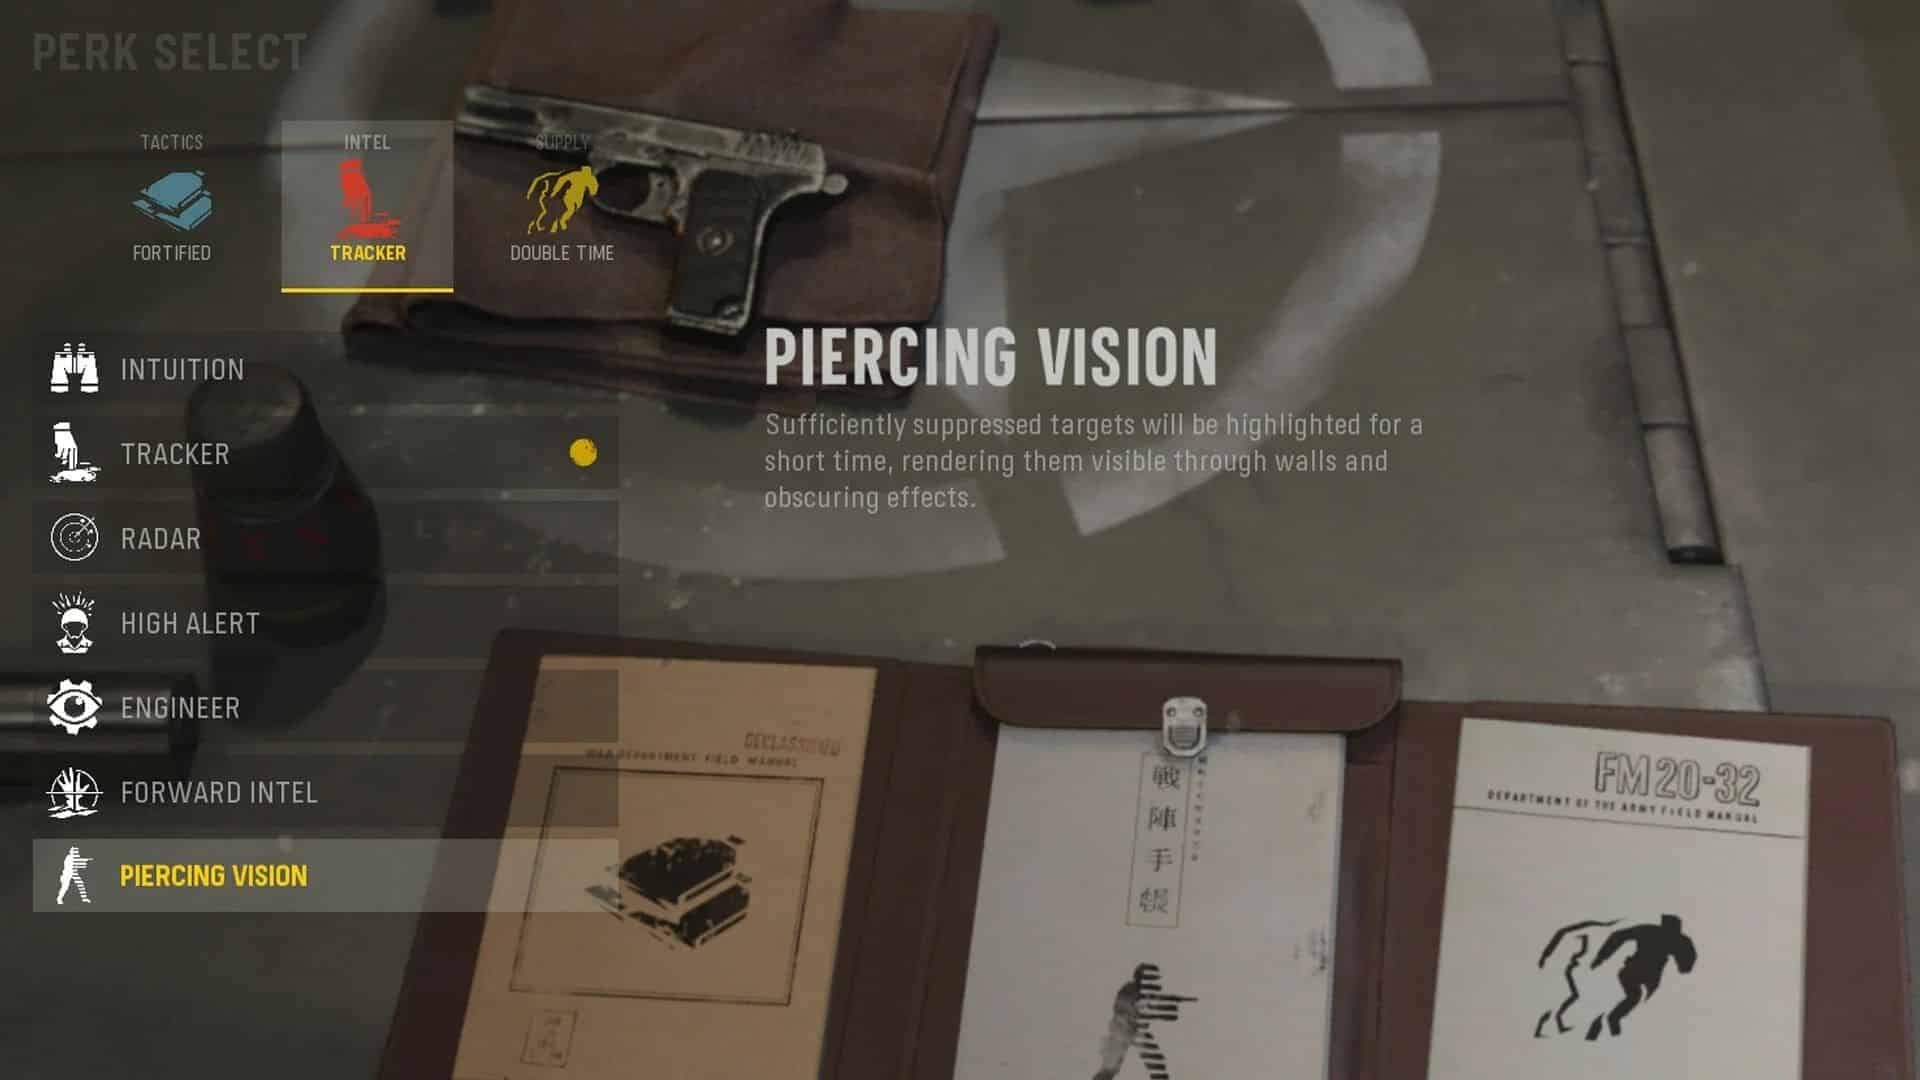 piercing vision perk in vanguard